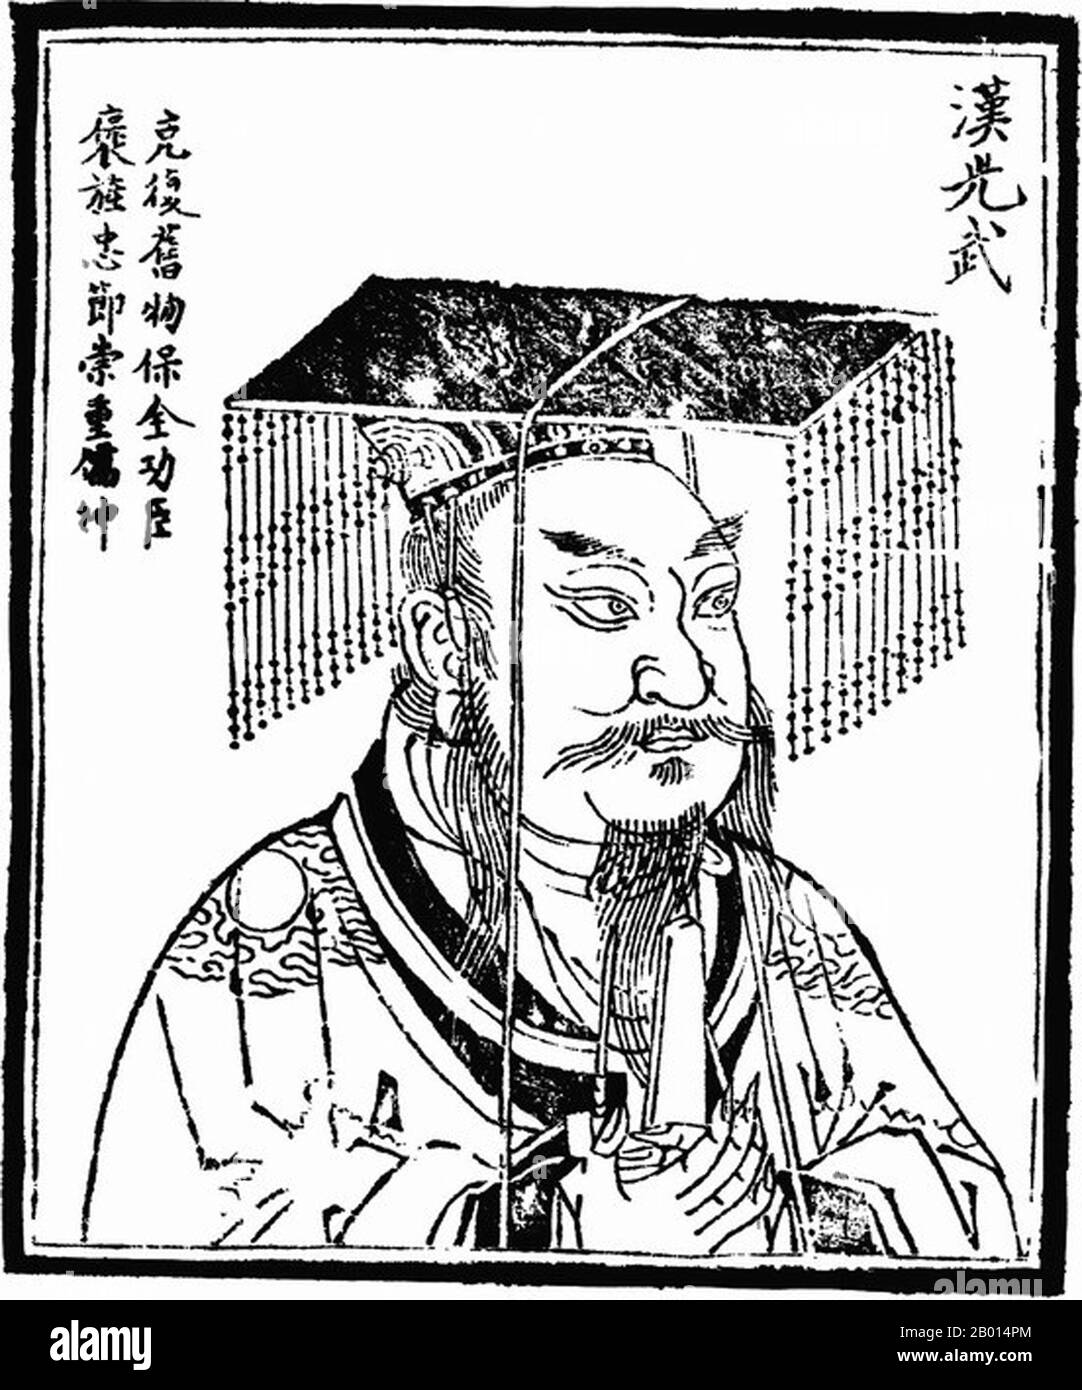 China: Kaiser Guangwu (15. Januar 5 v. Chr. - 29. März 57 n. Chr.), Gründer und erster Kaiser der östlichen Han-Dynastie (r. 5. August 25 - 29. März 57 CE). Abbildung, c. 1498. Kaiser Guangwu, geboren Liu Xiu und Höflichkeitsname Wenshu, war ein Kaiser der Han-Dynastie und restaurierte die Dynastie im Jahre 25 u.Z. und war somit Gründer der späteren Han- oder östlichen Han-Dynastie. Zunächst regierte er über einen Teil Chinas, aber durch die Unterdrückung und Eroberung regionaler Kriegsherren wurde ganz China bis zu seinem Tod konsolidiert. Er war ein brillanter Stratege und bekannt für seine Entschlossenheit und Barmherzigkeit. Stockfoto